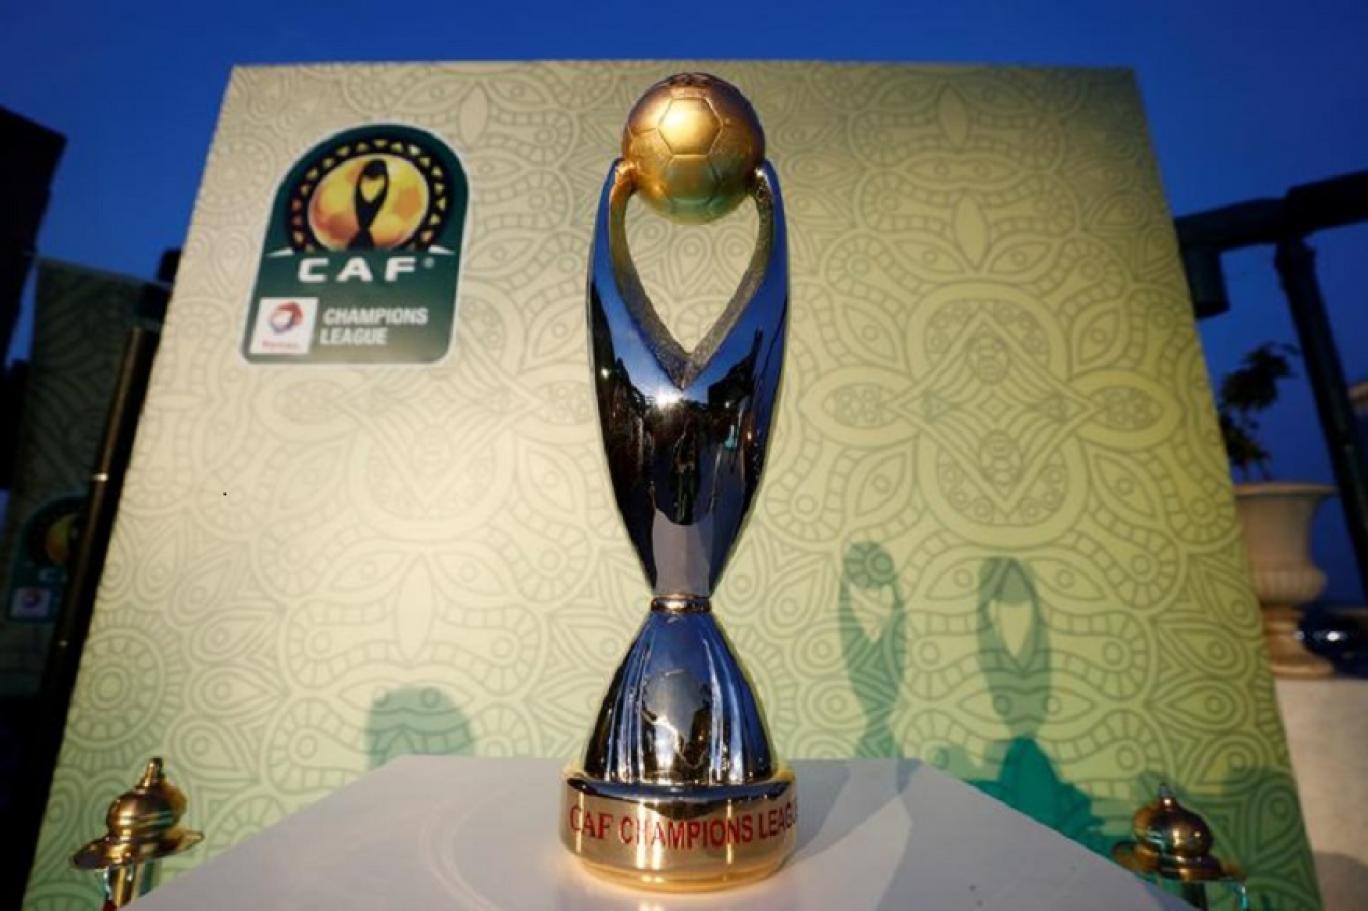  3 منتخبات عربية إلى كأس أمم إفريقيا 